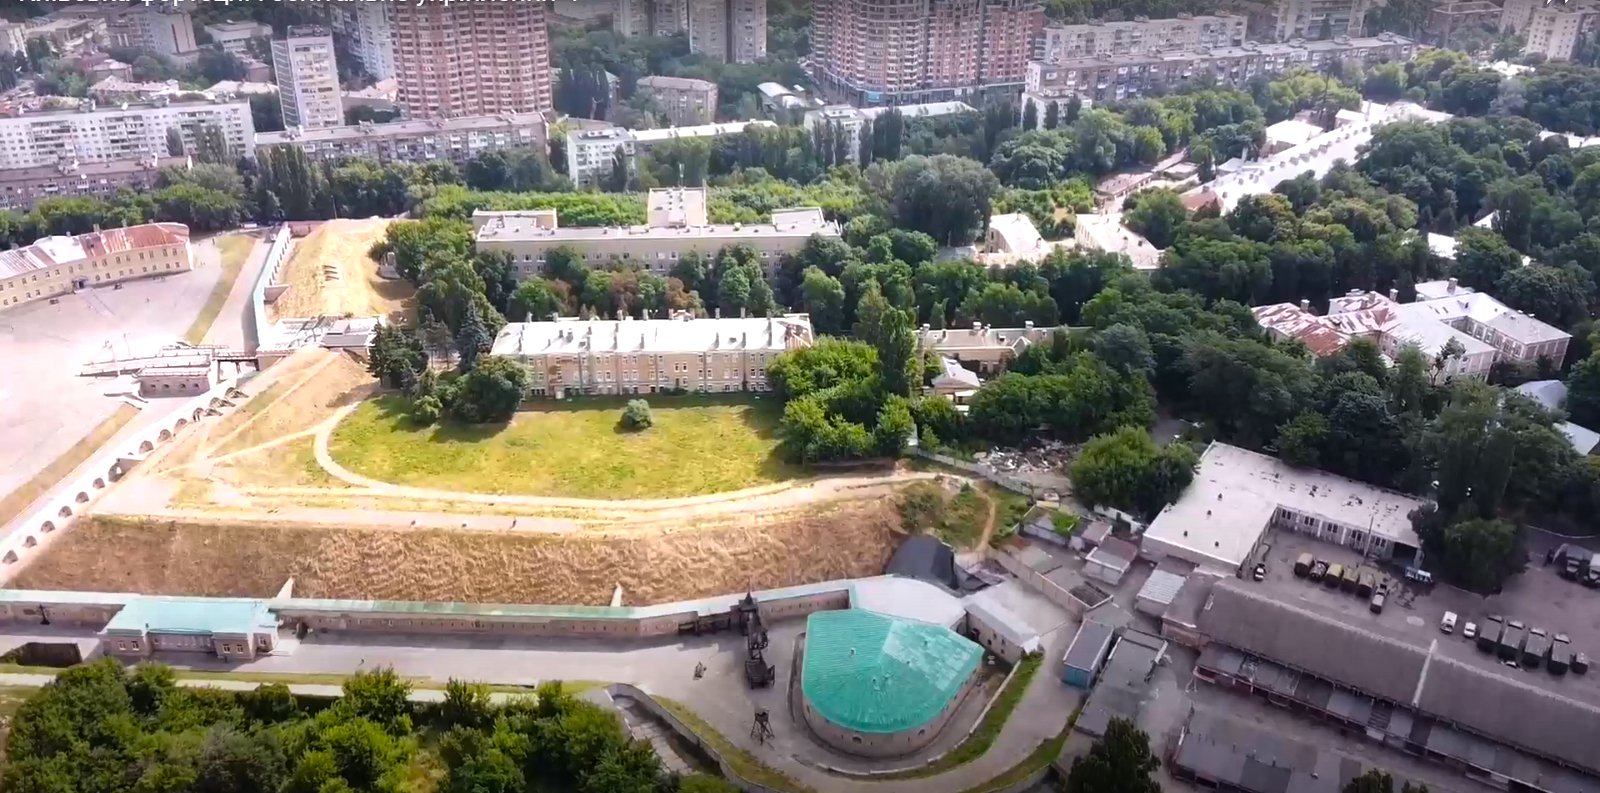 Під зеленим дахом внизу – капонір, цегляна споруда з гарматами при Госпітальному укріпленні. Зараз тут експозиція музею "Київська фортеця".